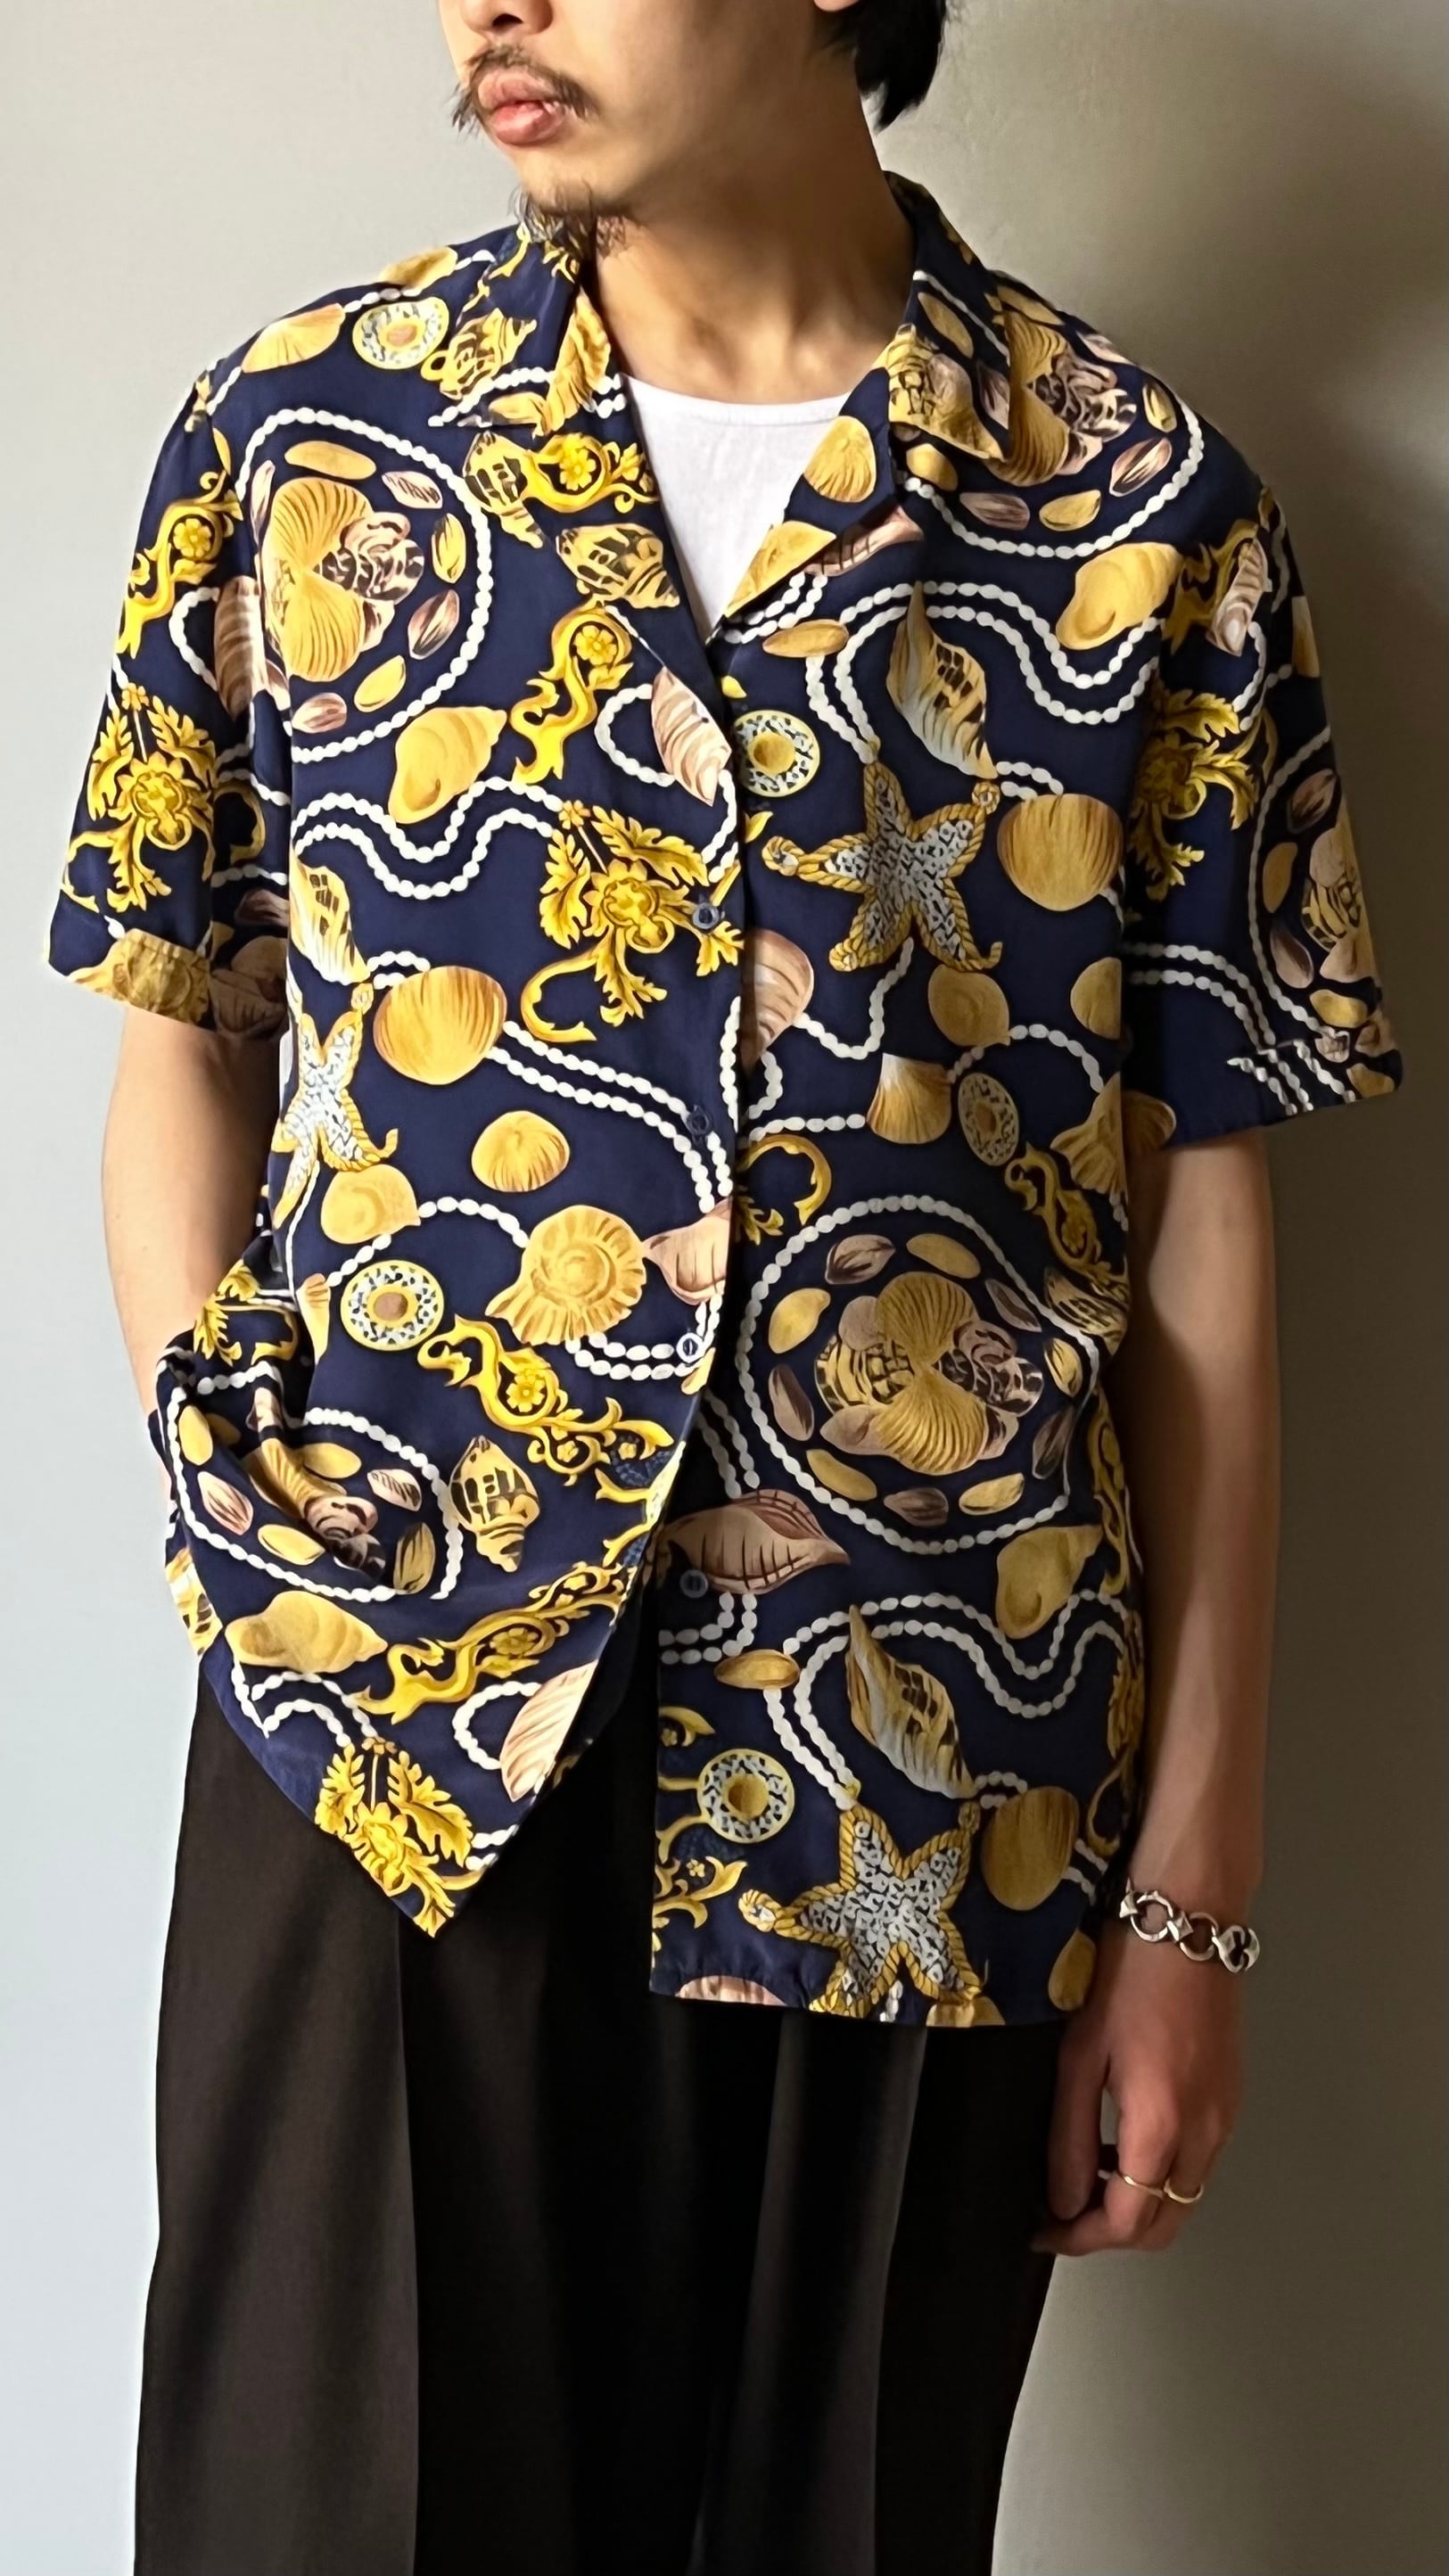 シェルパターンシルクオープンカラーシャツ | TUNAGI JAPAN powered by BASE